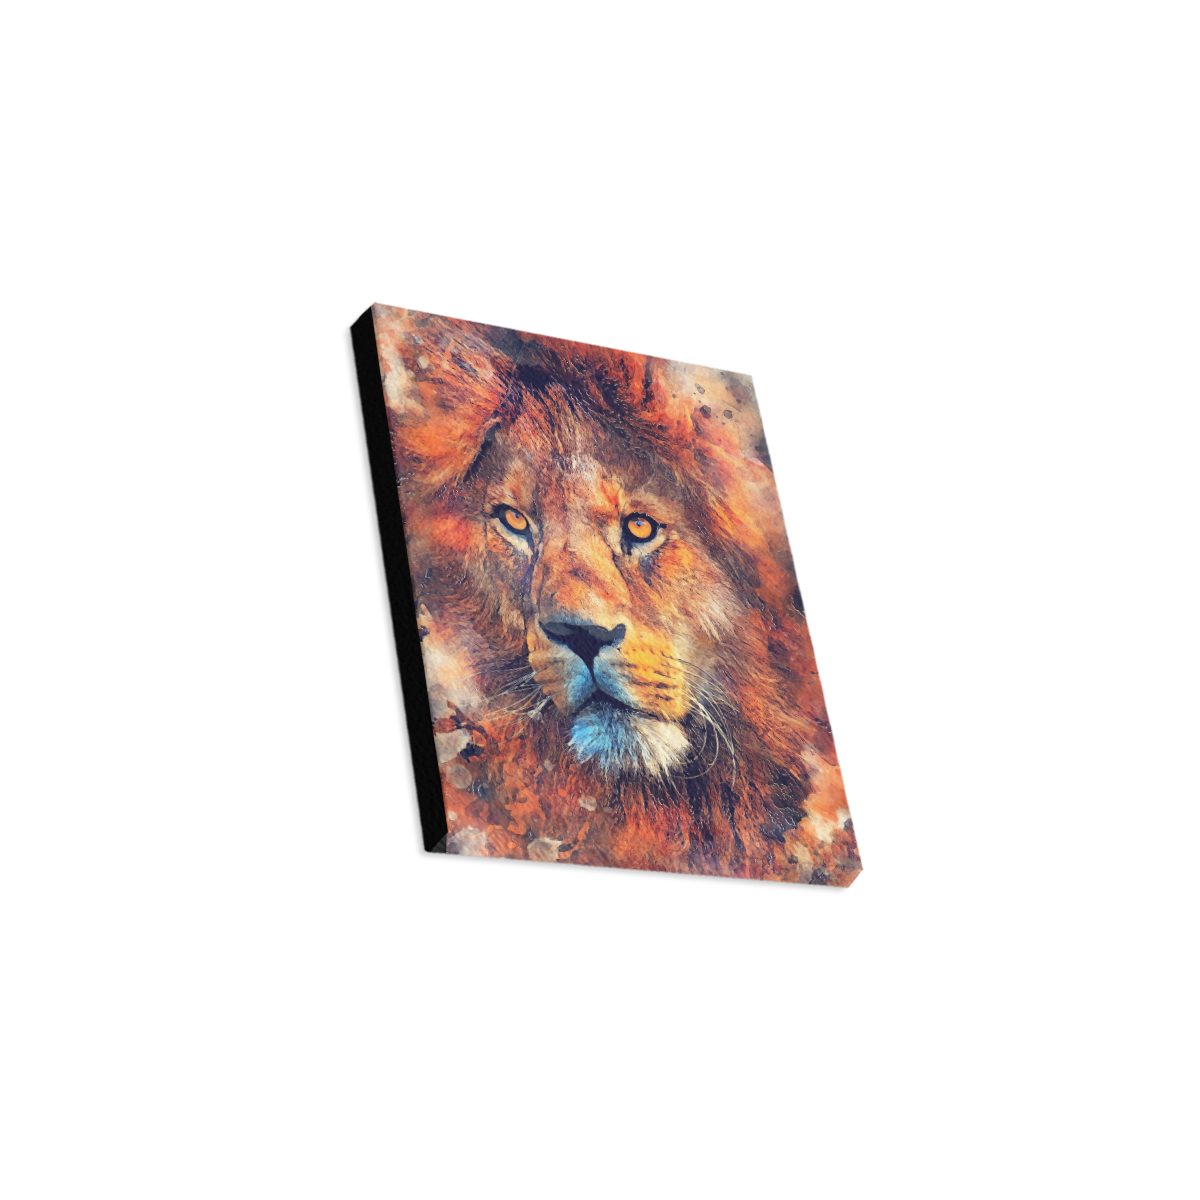 lion art #lion #animals #cat Canvas Print 8"x10"